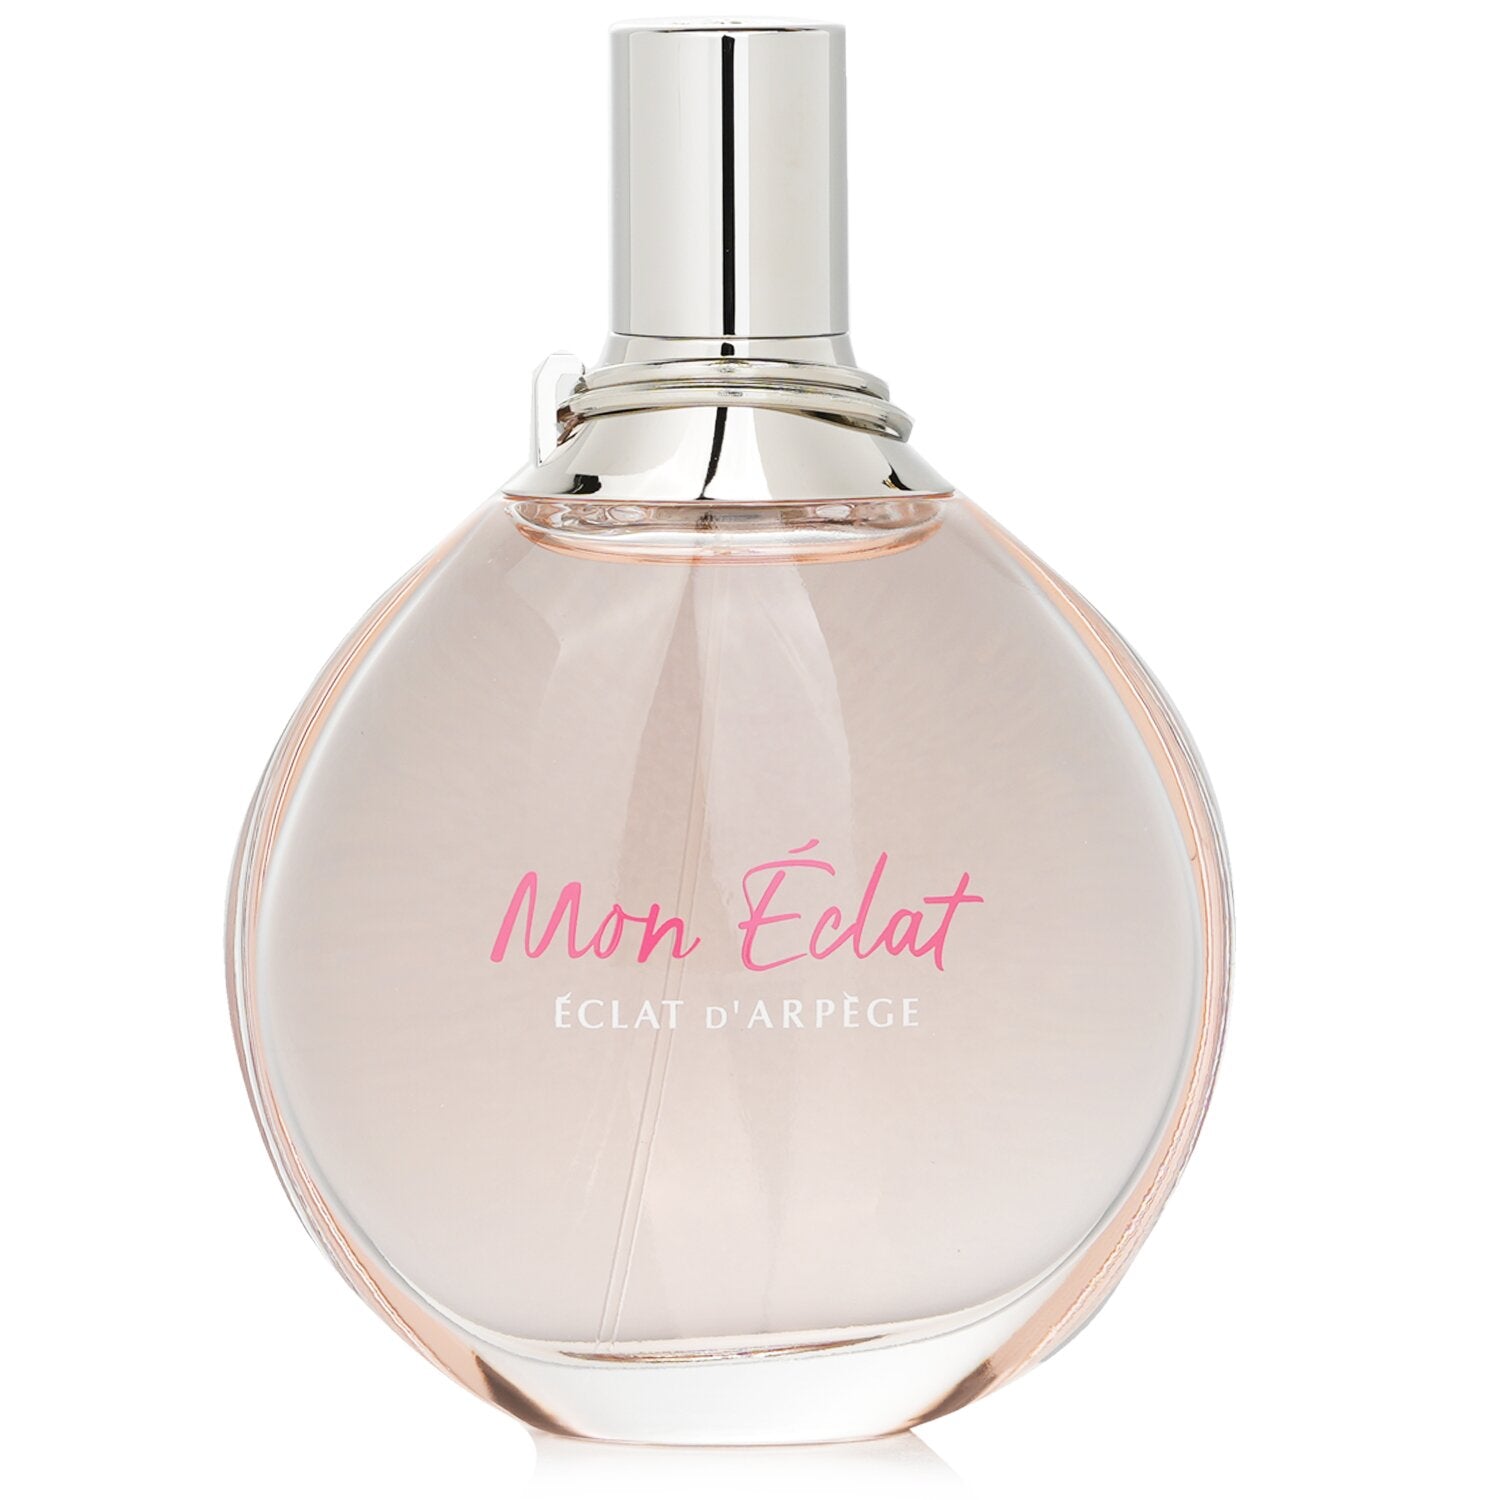 LANVIN Eclat D'Arpege Eau De Parfum for her, 50ml : : Beauty